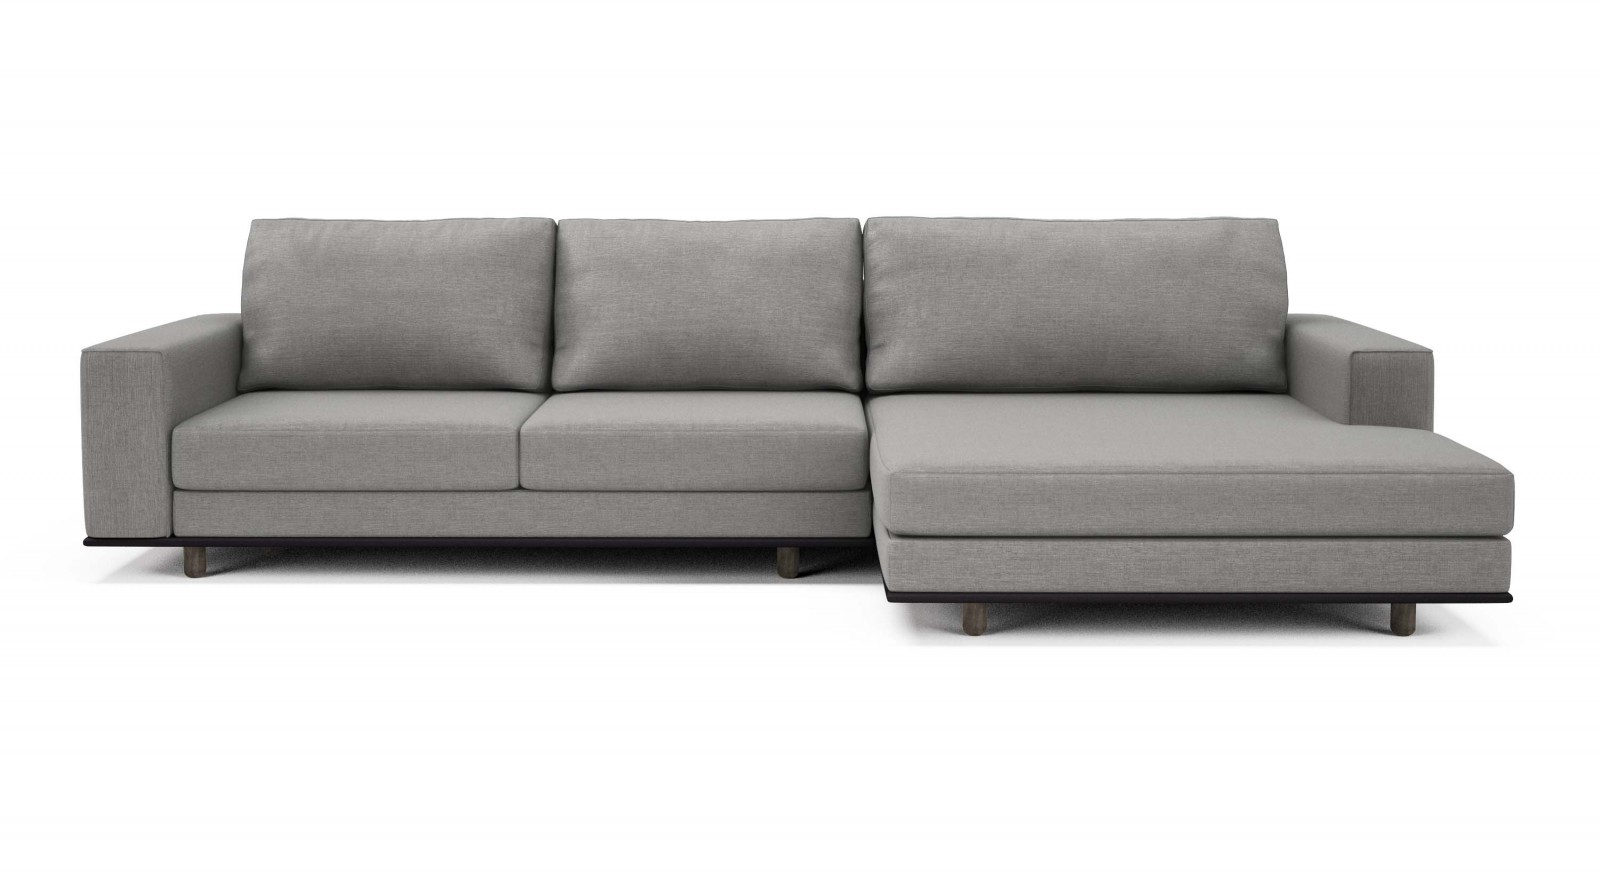 126" Modular sofa